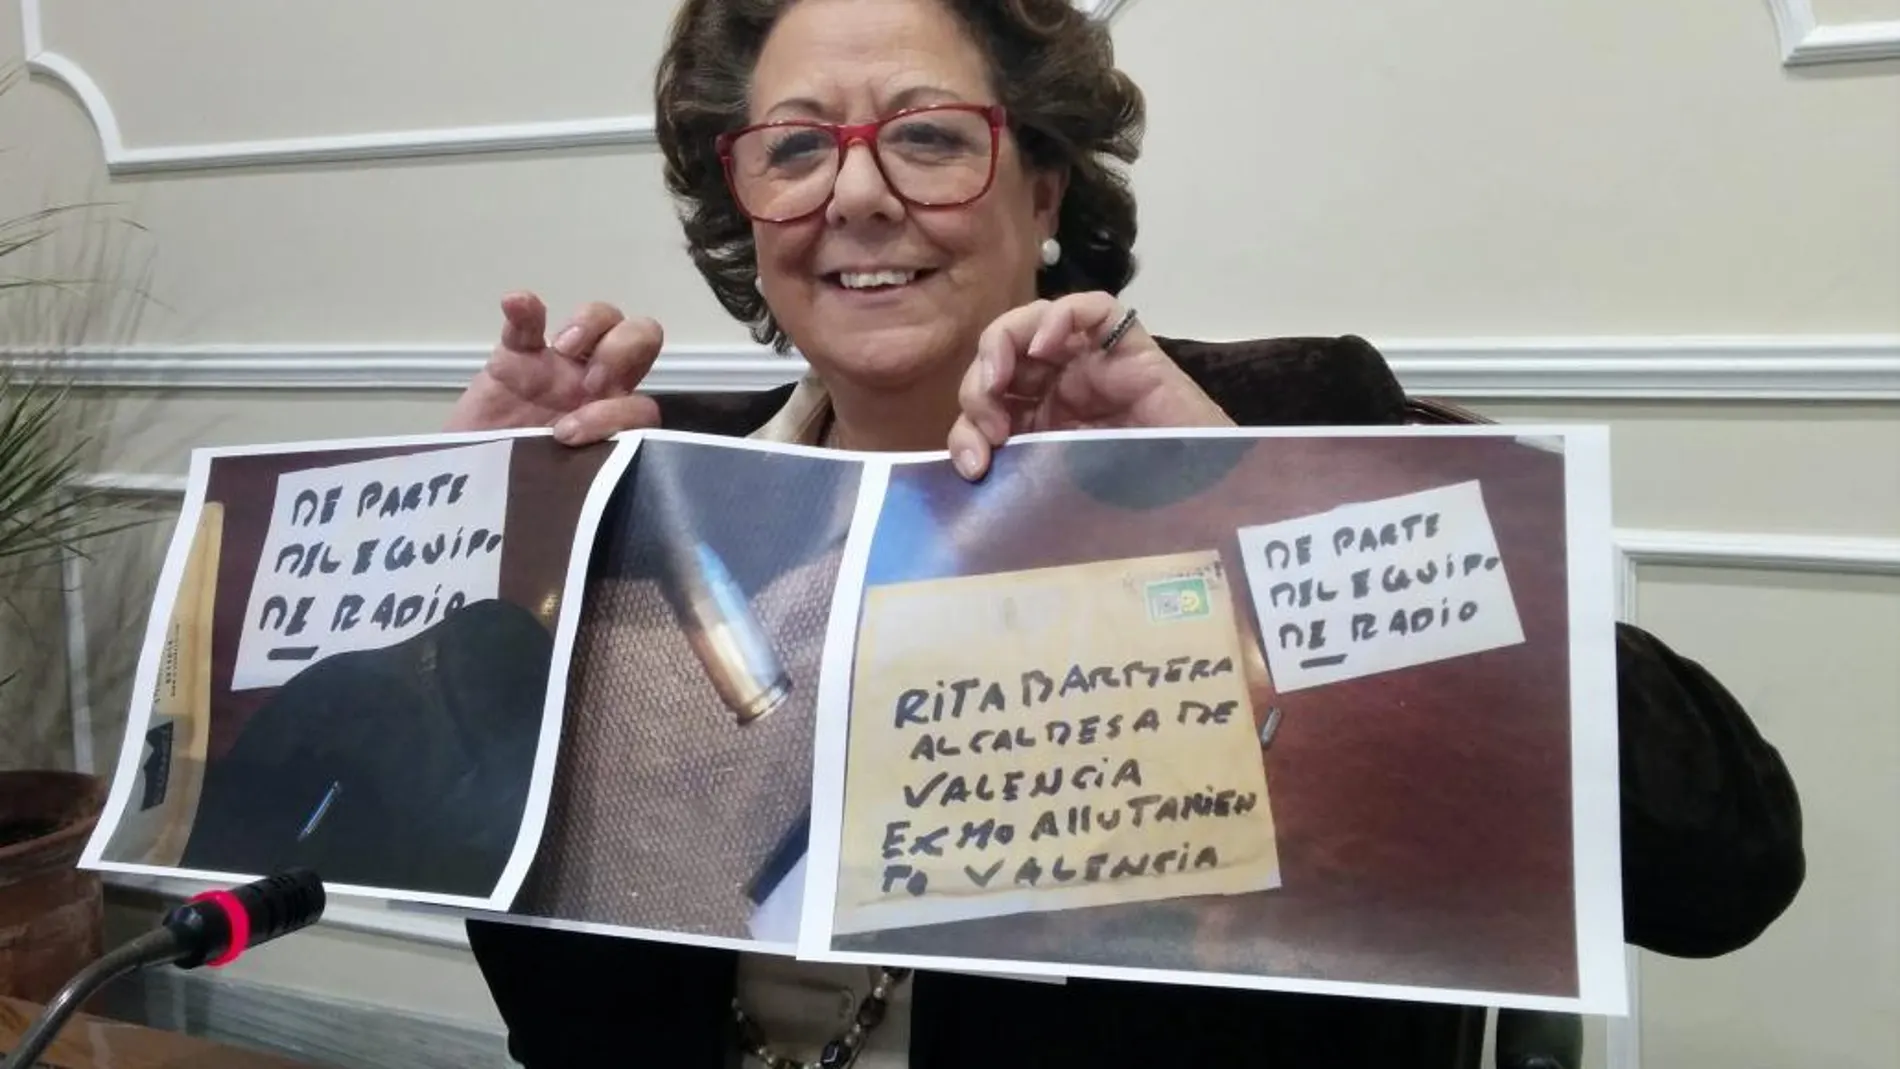 La alcaldesa de Valencia, Rita Barberá, ya denunció el pasado 9 de enero la recepción de un sobre dirigido a su nombre, en cuyo interior había una bala del calibre 9 milímetros parabellum